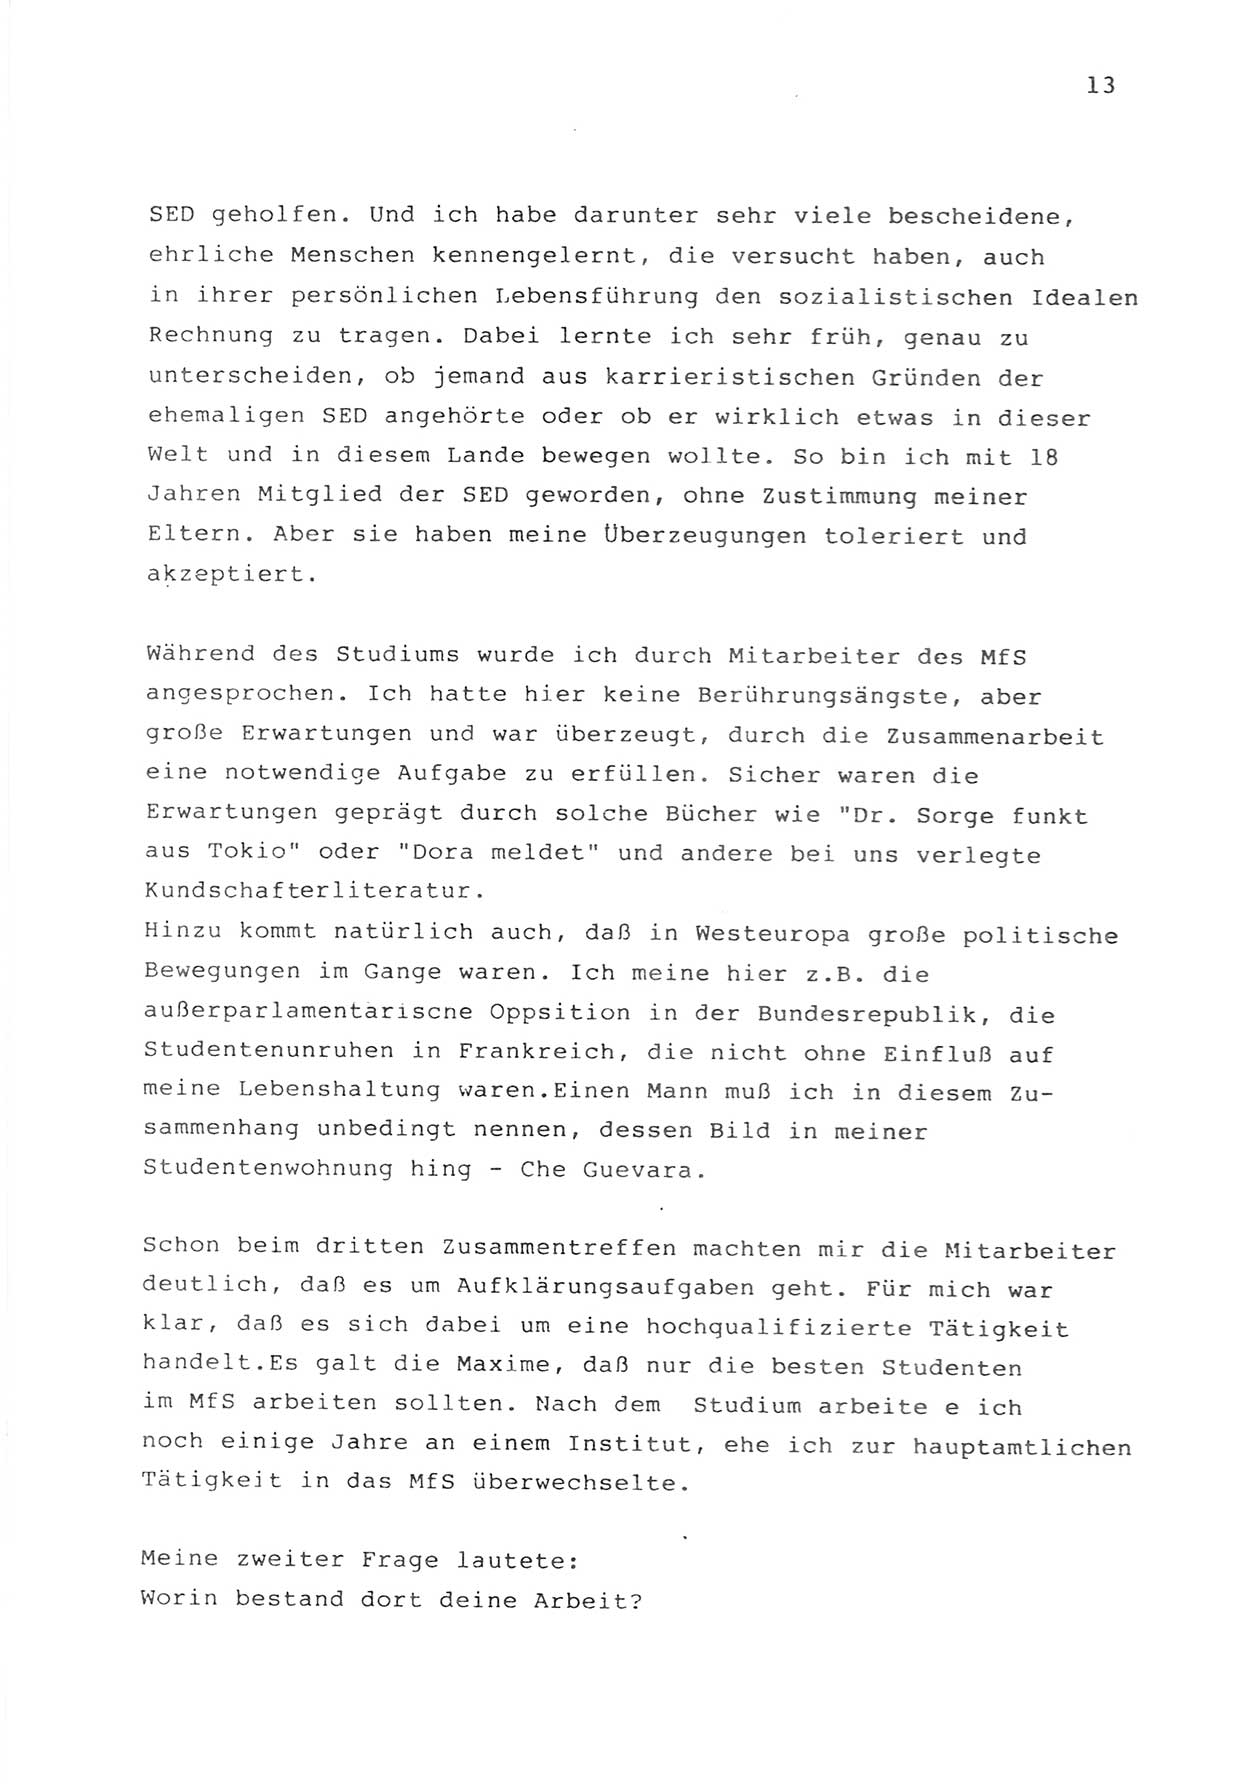 Zwie-Gespräch, Beiträge zur Bewältigung der Stasi-Vergangenheit [Deutsche Demokratische Republik (DDR)], Ausgabe Nr. 1, Berlin 1991, Seite 13 (Zwie-Gespr. Ausg. 1 1991, S. 13)